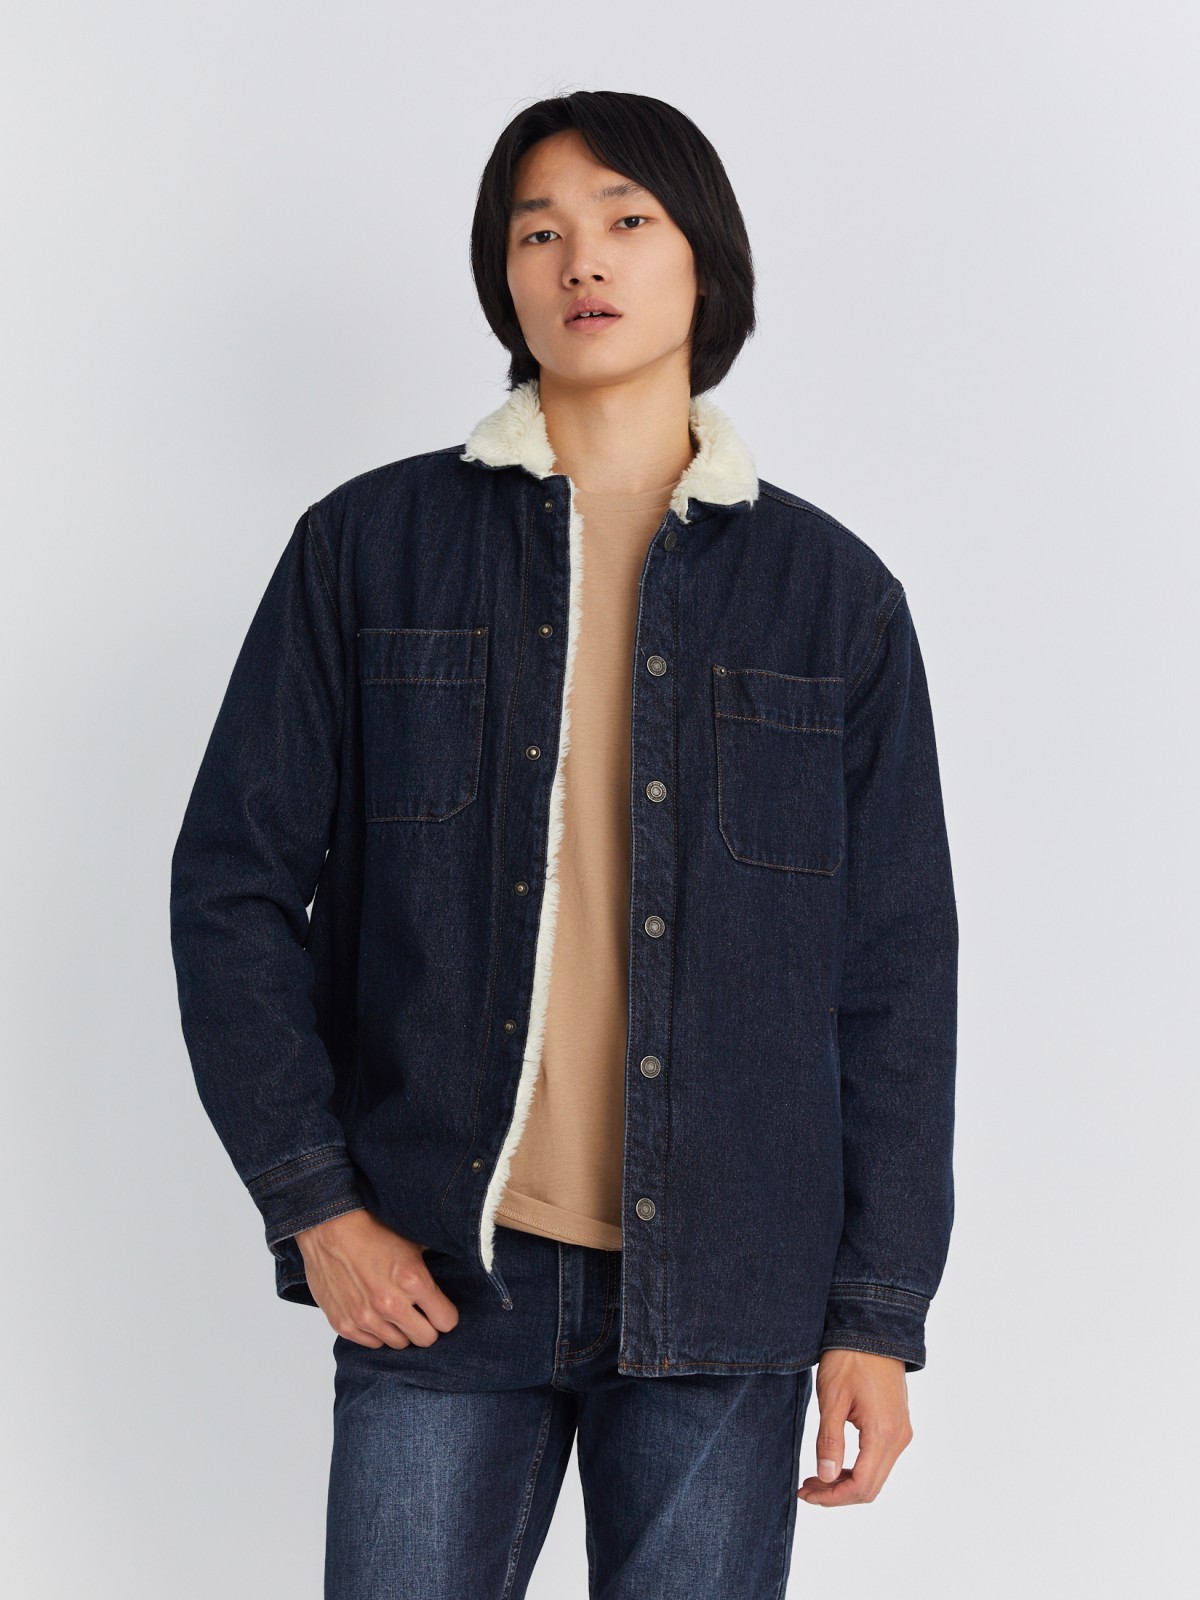 Утеплённая джинсовая куртка-рубашка с искусственным мехом zolla 212335W4S044, цвет голубой, размер S - фото 1